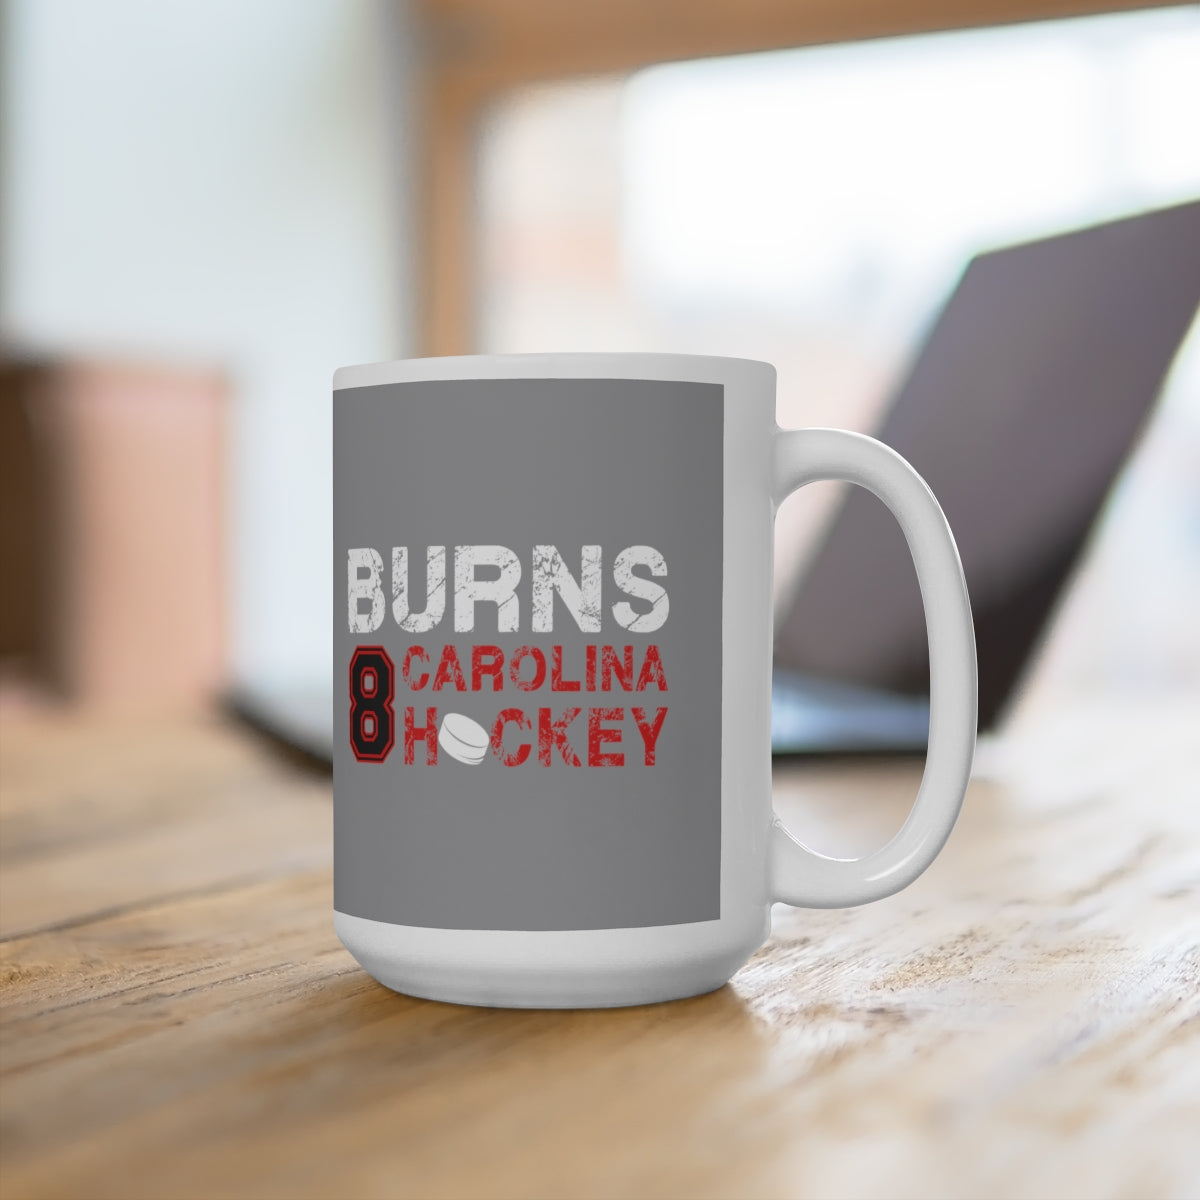 Burns 8 Carolina Hockey Ceramic Coffee Mug In Gray, 15oz